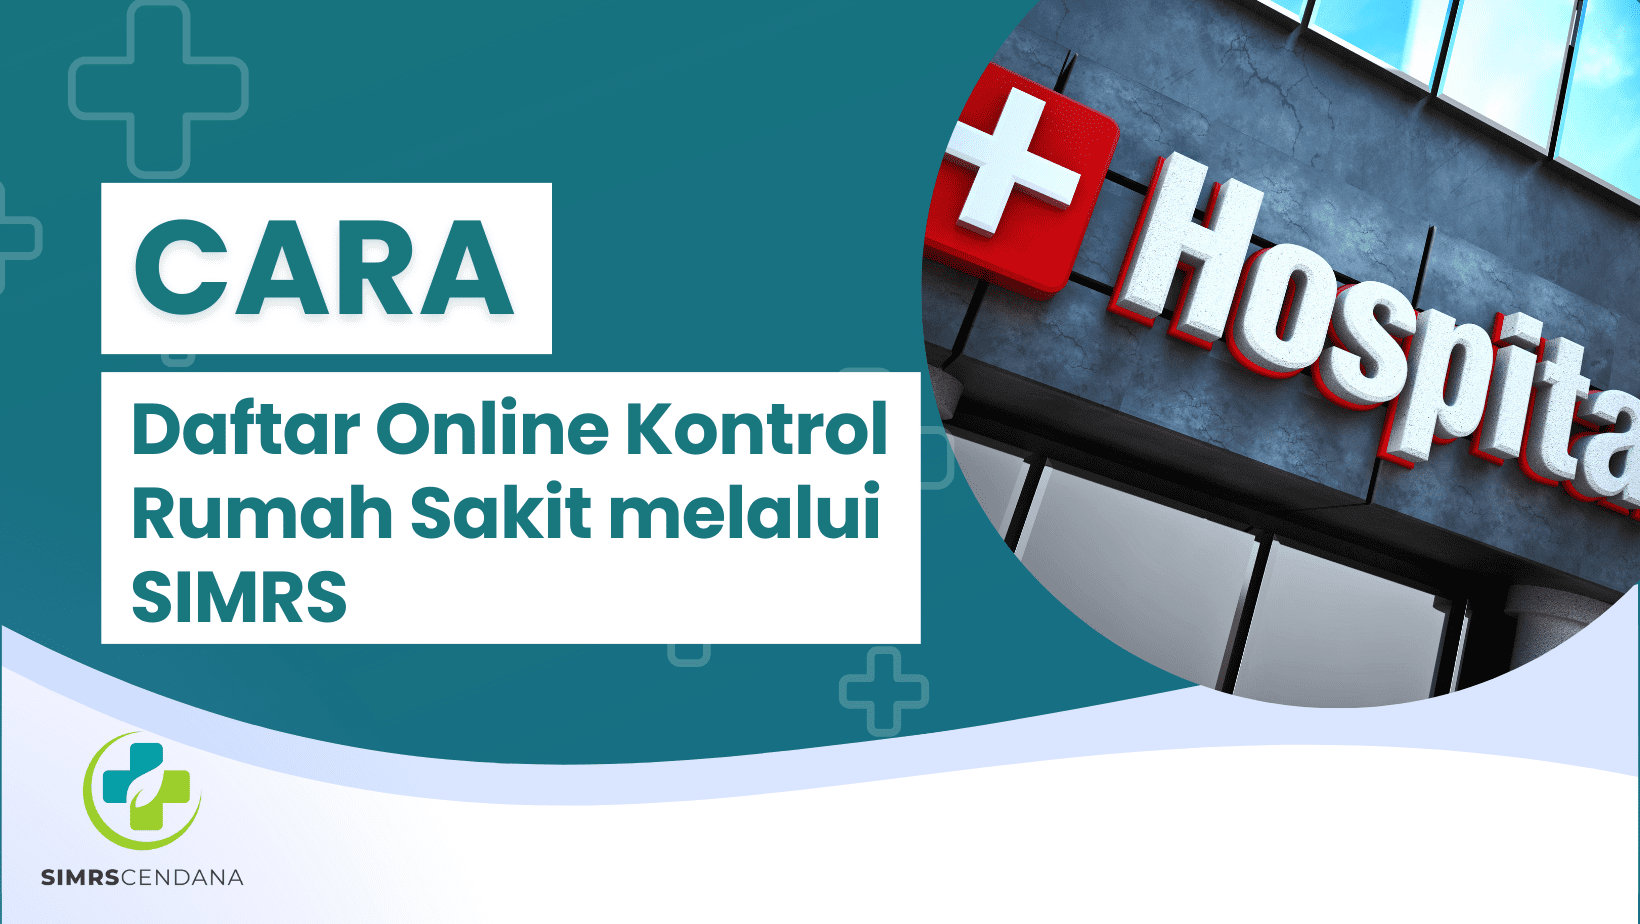 Cara Daftar Online Kontrol Rumah Sakit melalui SIMRS